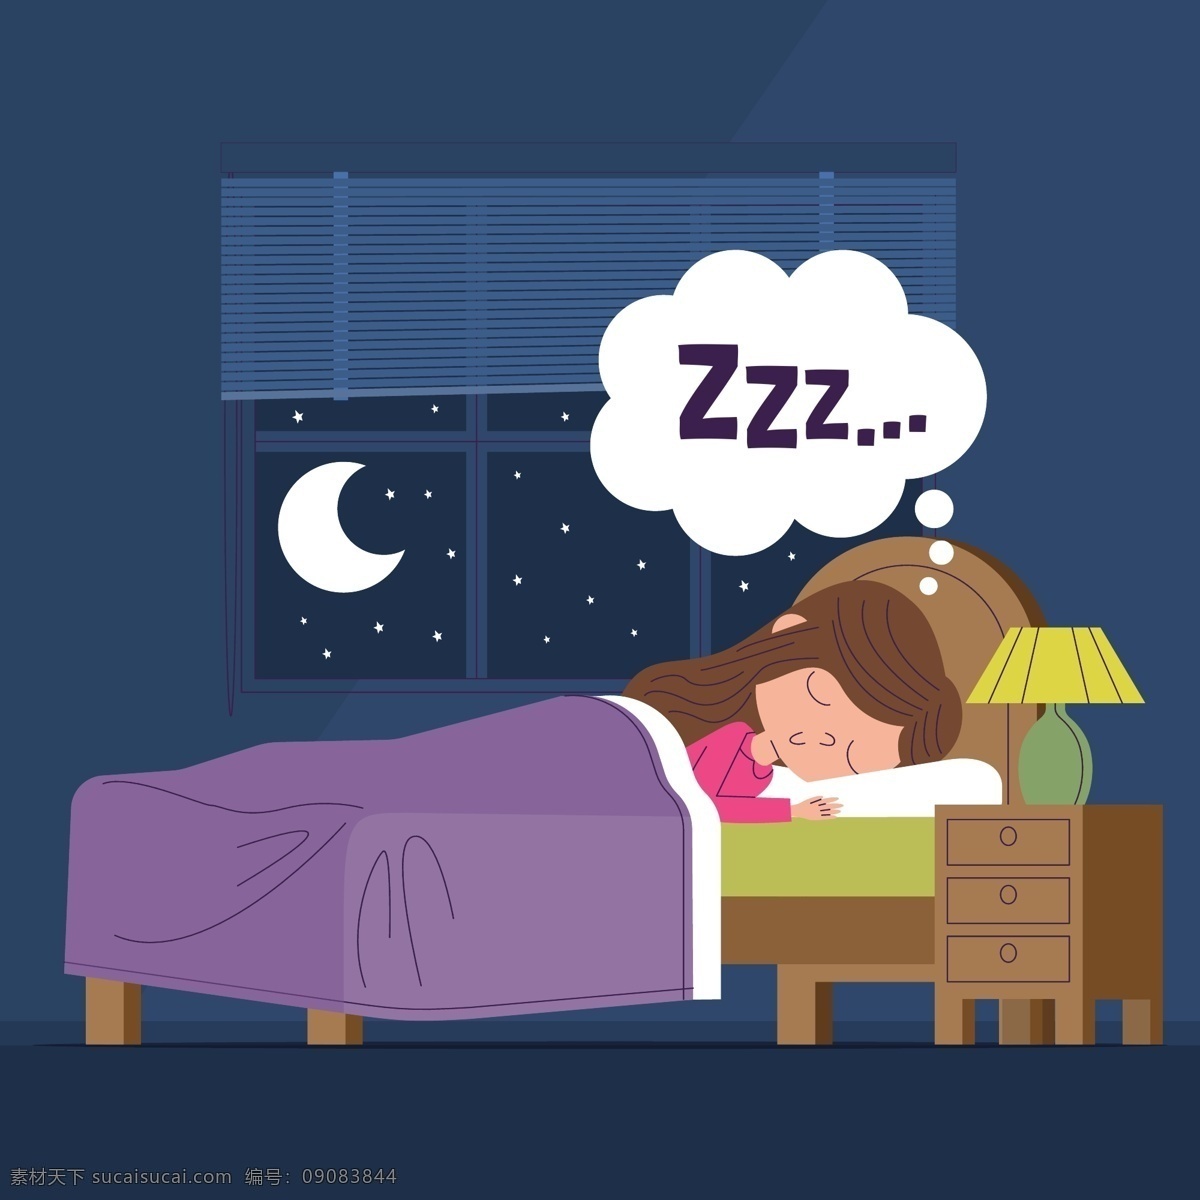 睡姿图片 睡姿 睡觉 休息 睡眠 失眠 生理现象 晚上 夜晚 睡觉姿势 睡着 睡眠状态 卡通设计